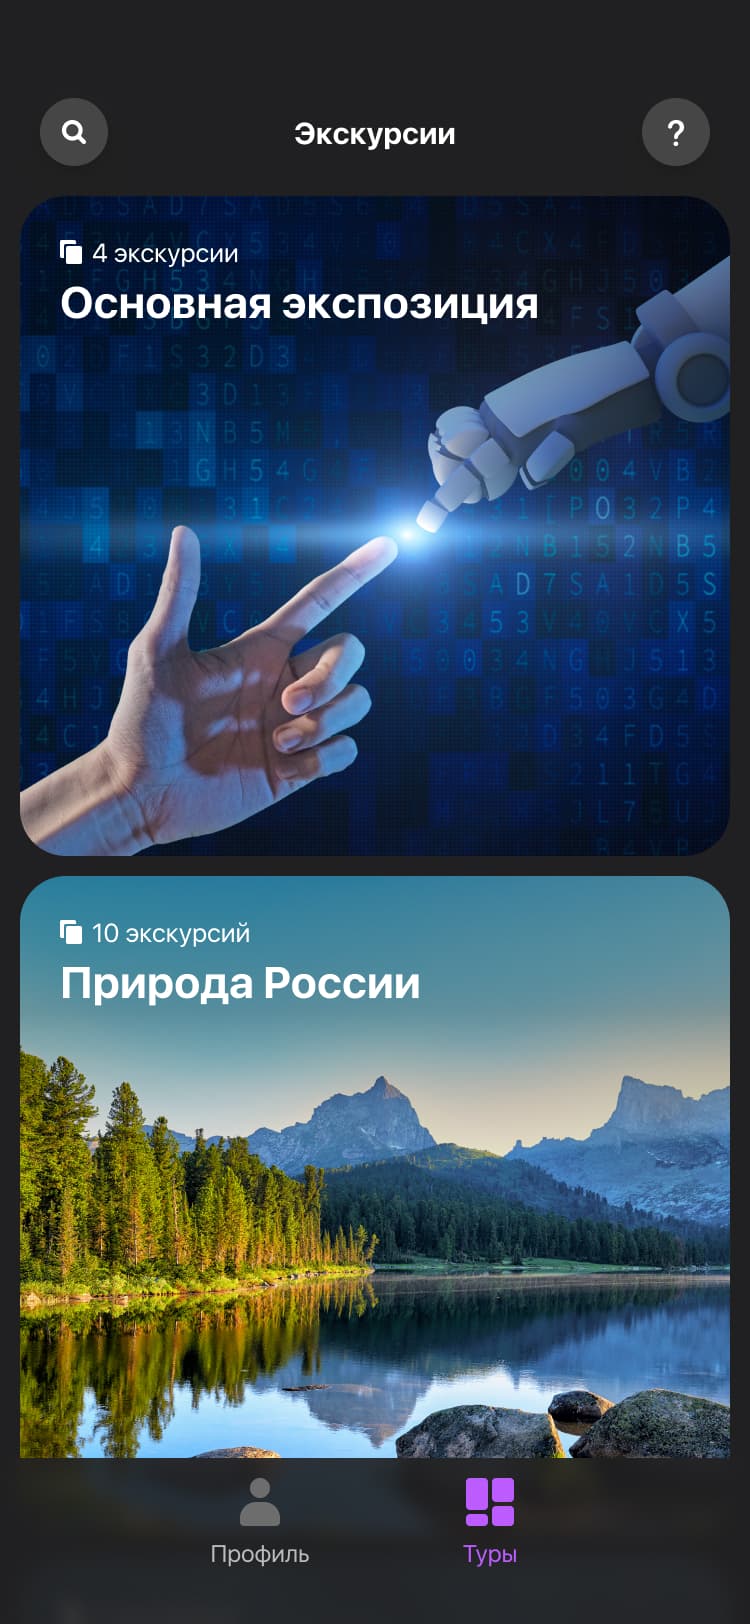 Мобильное приложение павильона России на Dubai Expo 2020. Главная страница.